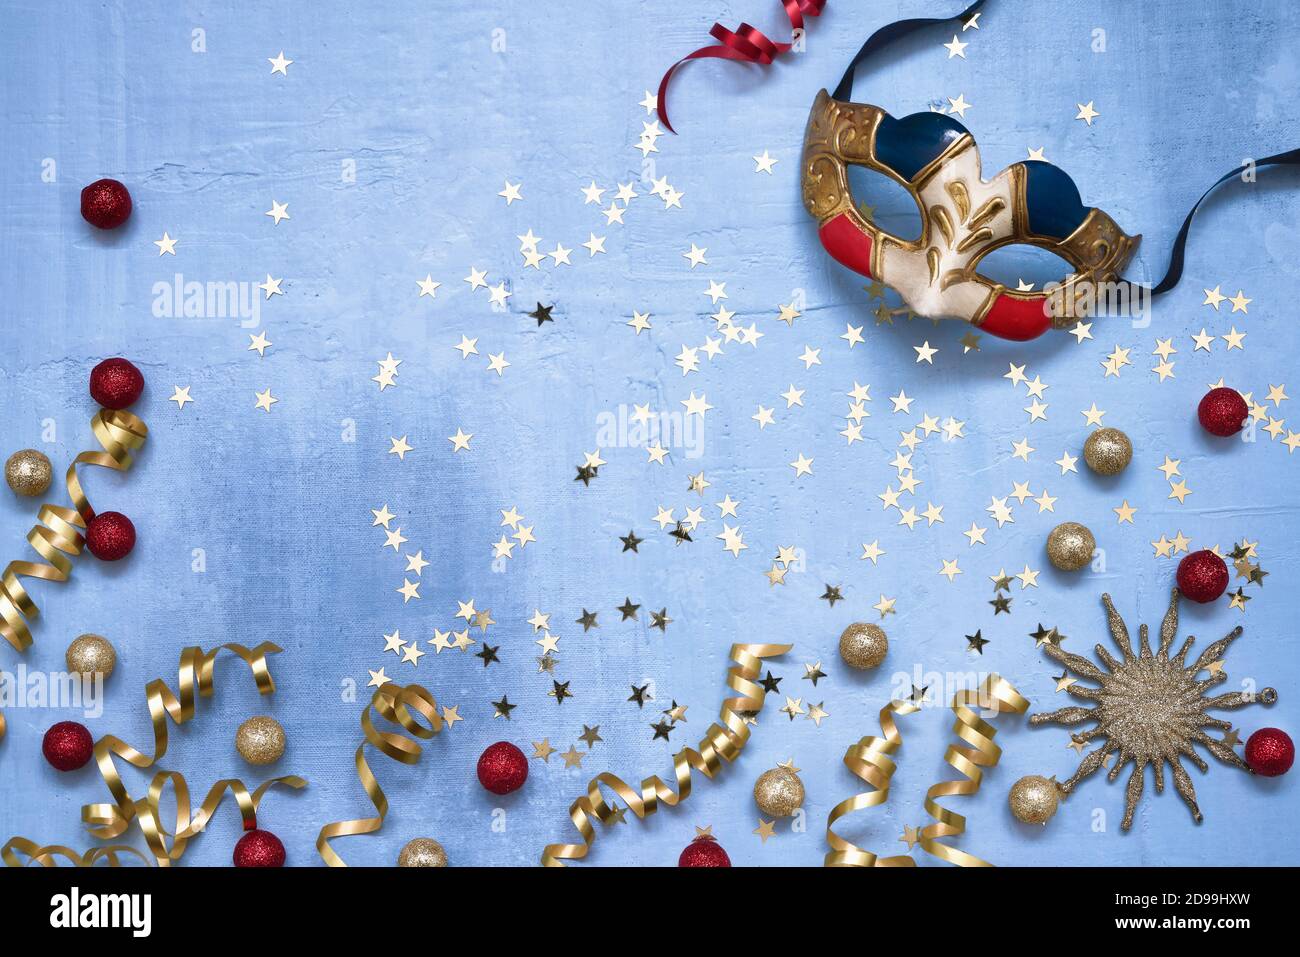 Venezianische Karnevalsmaske, Konfetti-Sterne und Party-Streamer auf blauem Hintergrund. Flaches Lay von Weihnachten, Jubiläum, Karneval, Neujahrsfeier. Stockfoto